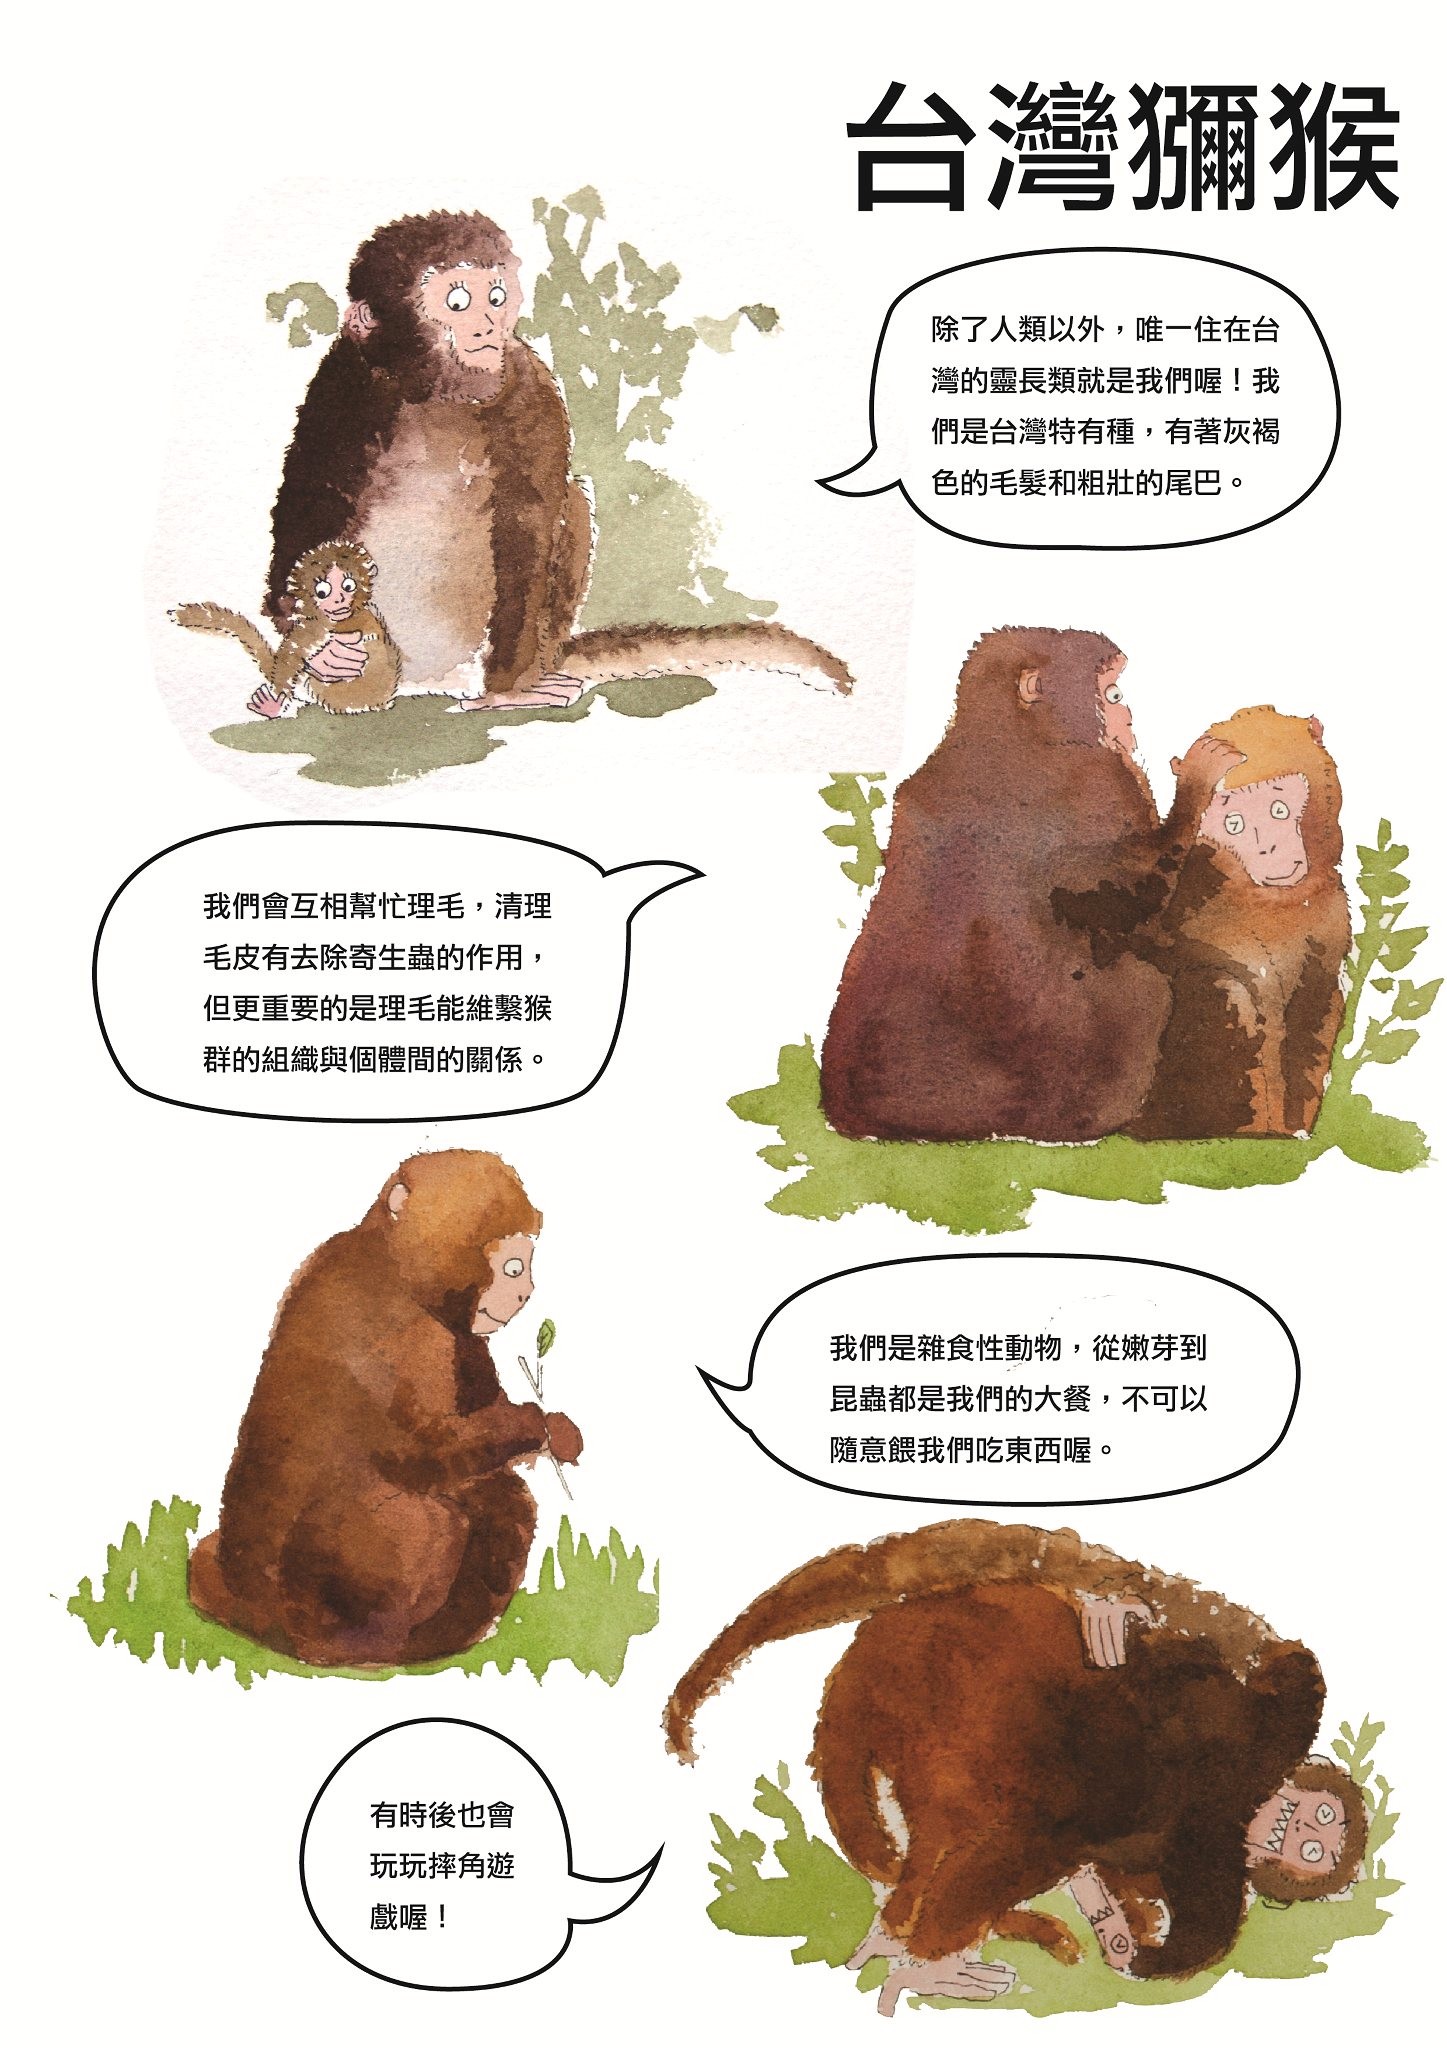 活潑愛玩的台灣獼猴